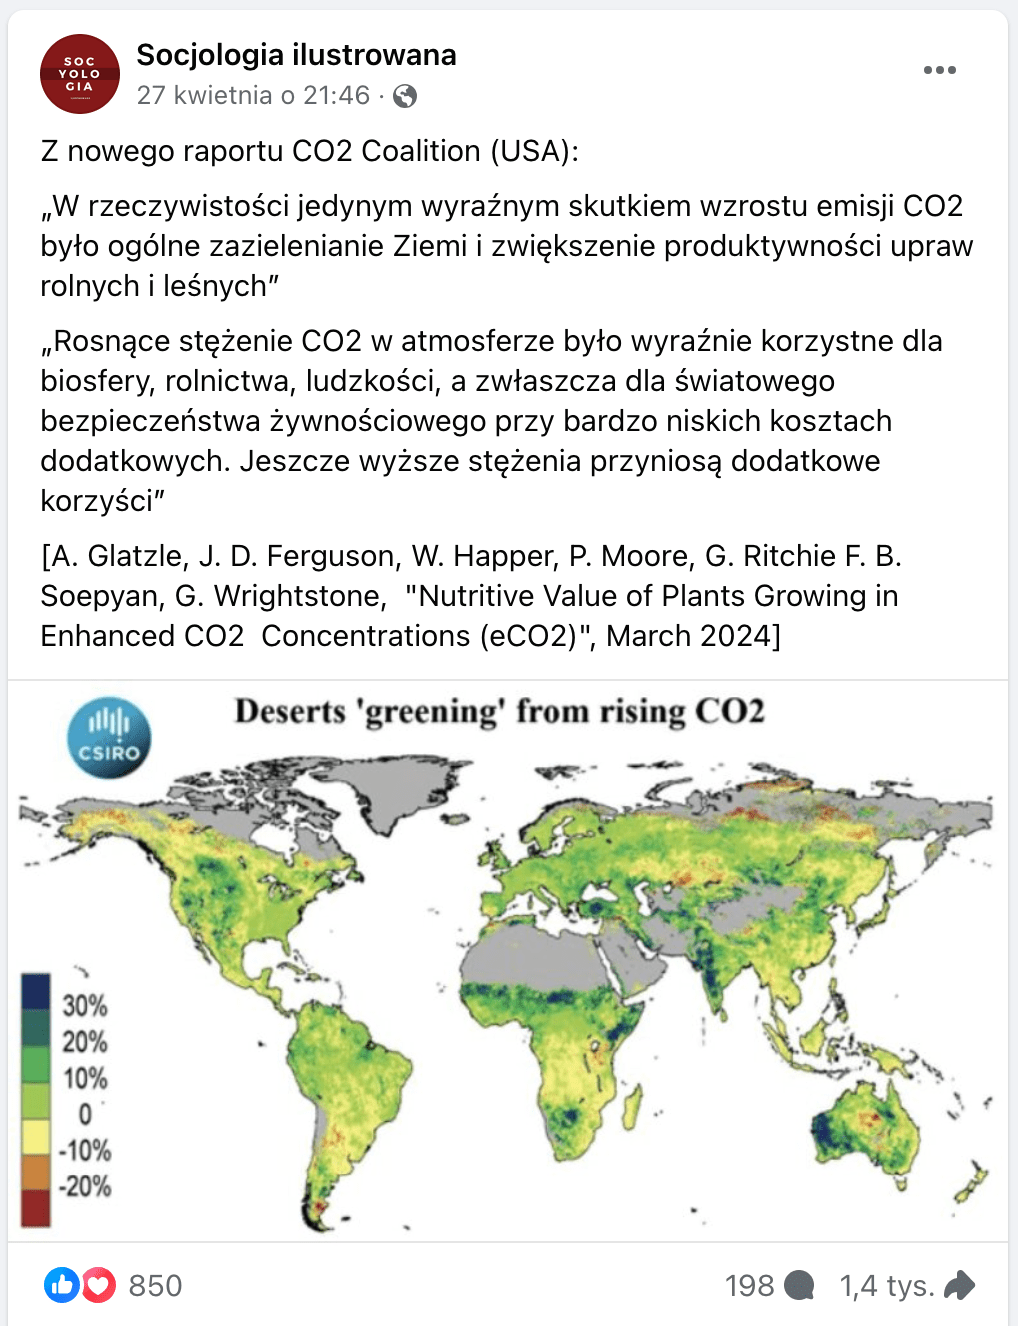 Zrzut ekranu posta na Facebooku. Dołączono do niego mapę, na której zaznaczono „zielenienie” terenów pustynnych w związku z wyższym stężeniu CO2.